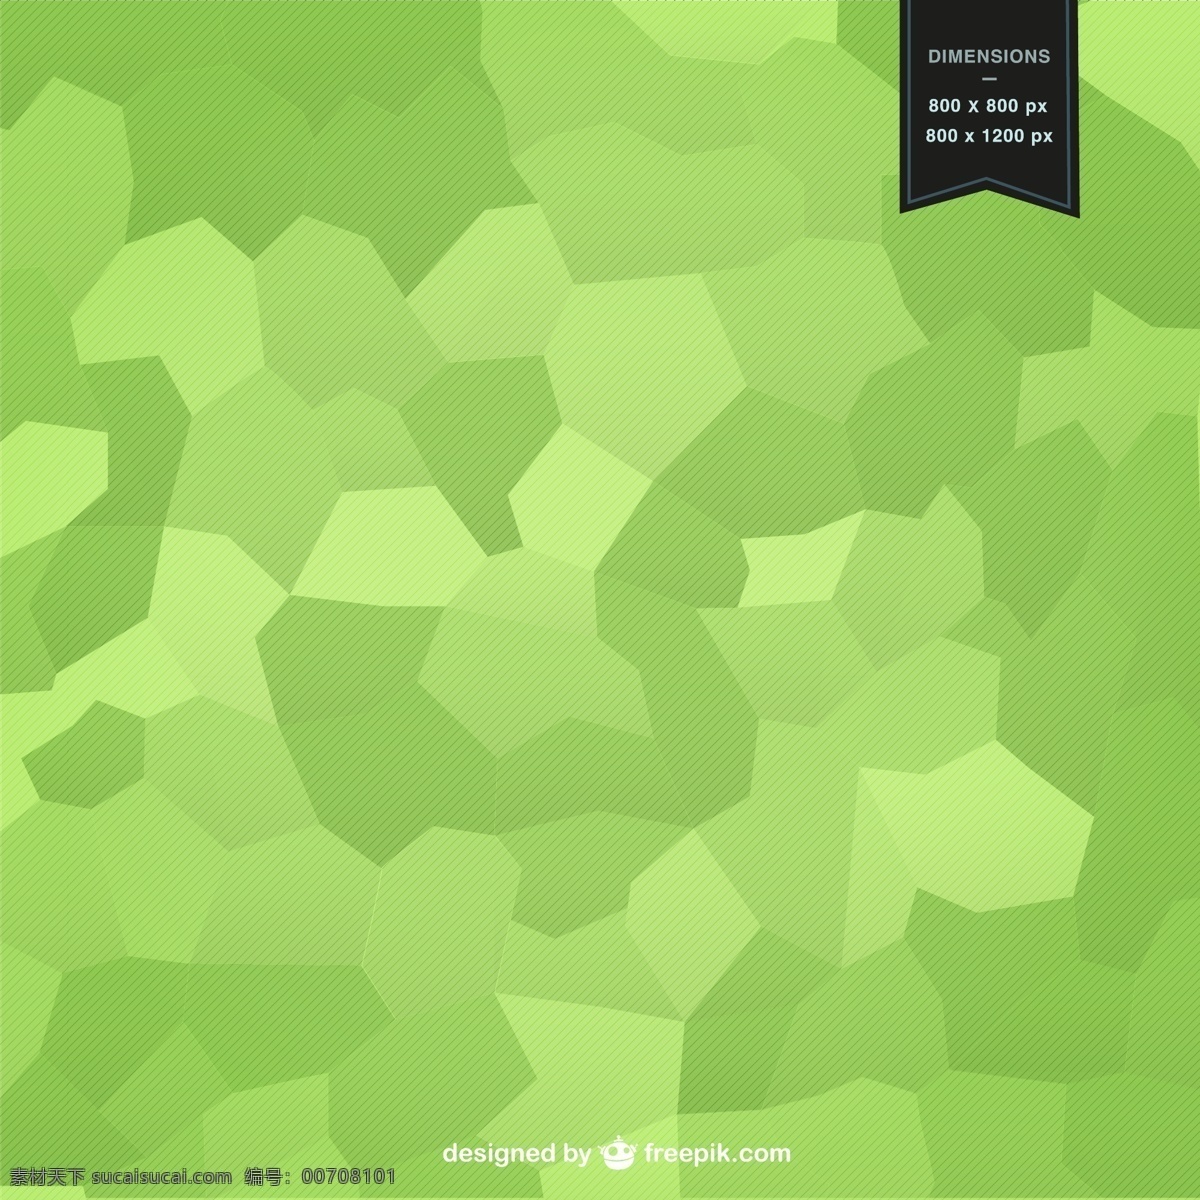 形状镶嵌背景 背景 抽象 几何 模板 形状 壁纸 布局 几何背景 马赛克 抽象设计 几何图形 背景设计 抽象的形状 绿色